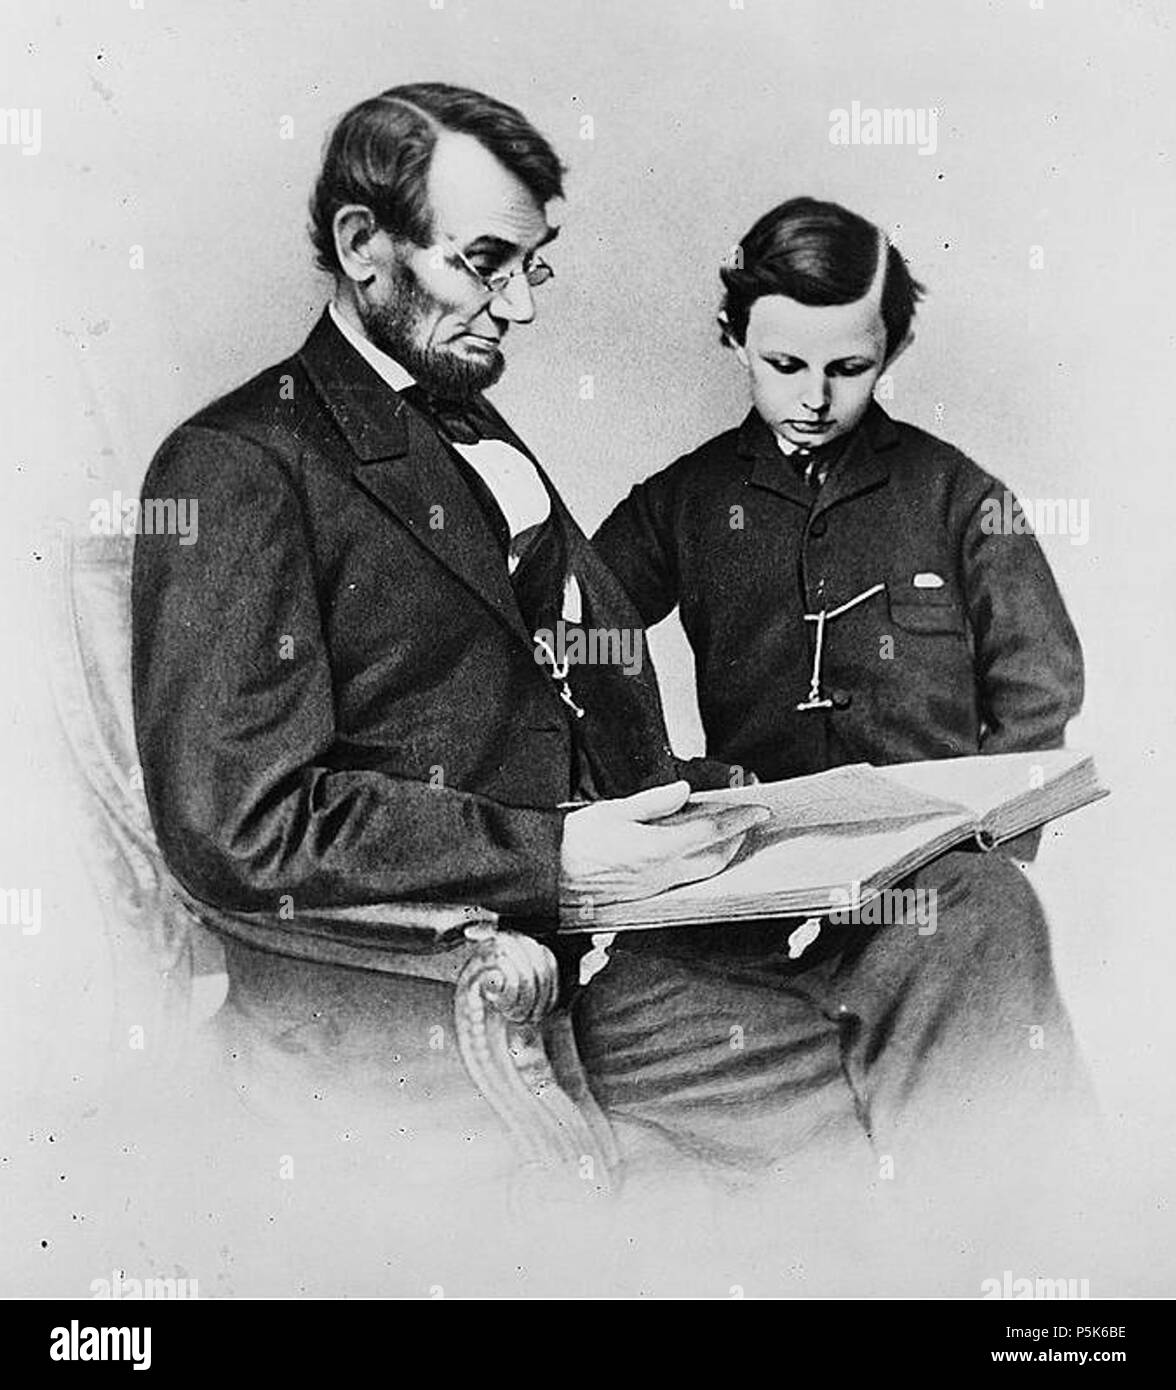 N/A. Inglese: Abraham Lincoln e suo figlio Tad guardando un album di fotografie. Ostenorf# O-93; Meserve# M-39 . Creato/Pubblicato: Washington, D.C. 9 febbraio 1864. Anthony Berger, fotografo. Brady Fotografico Nazionale Galleria d'arte (Washington, D.C.) 49 A&amp;TLincoln Foto Stock